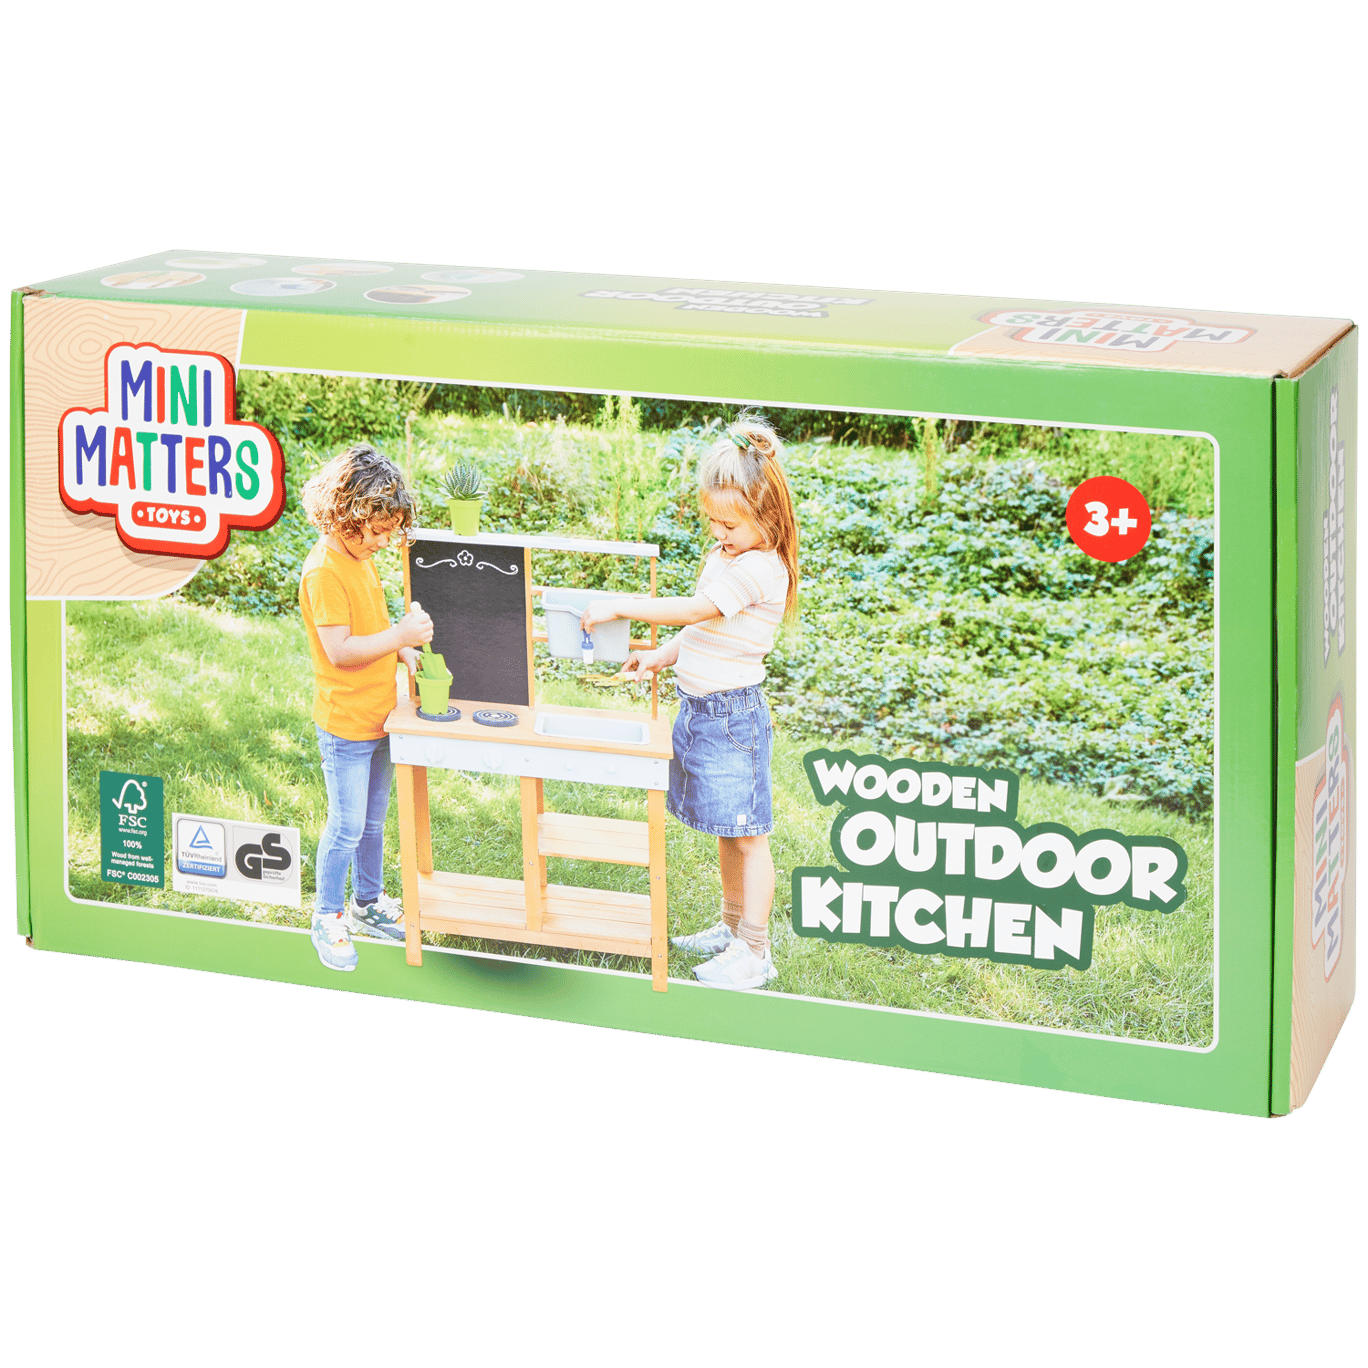 Cucina giocattolo in legno Mini Matters